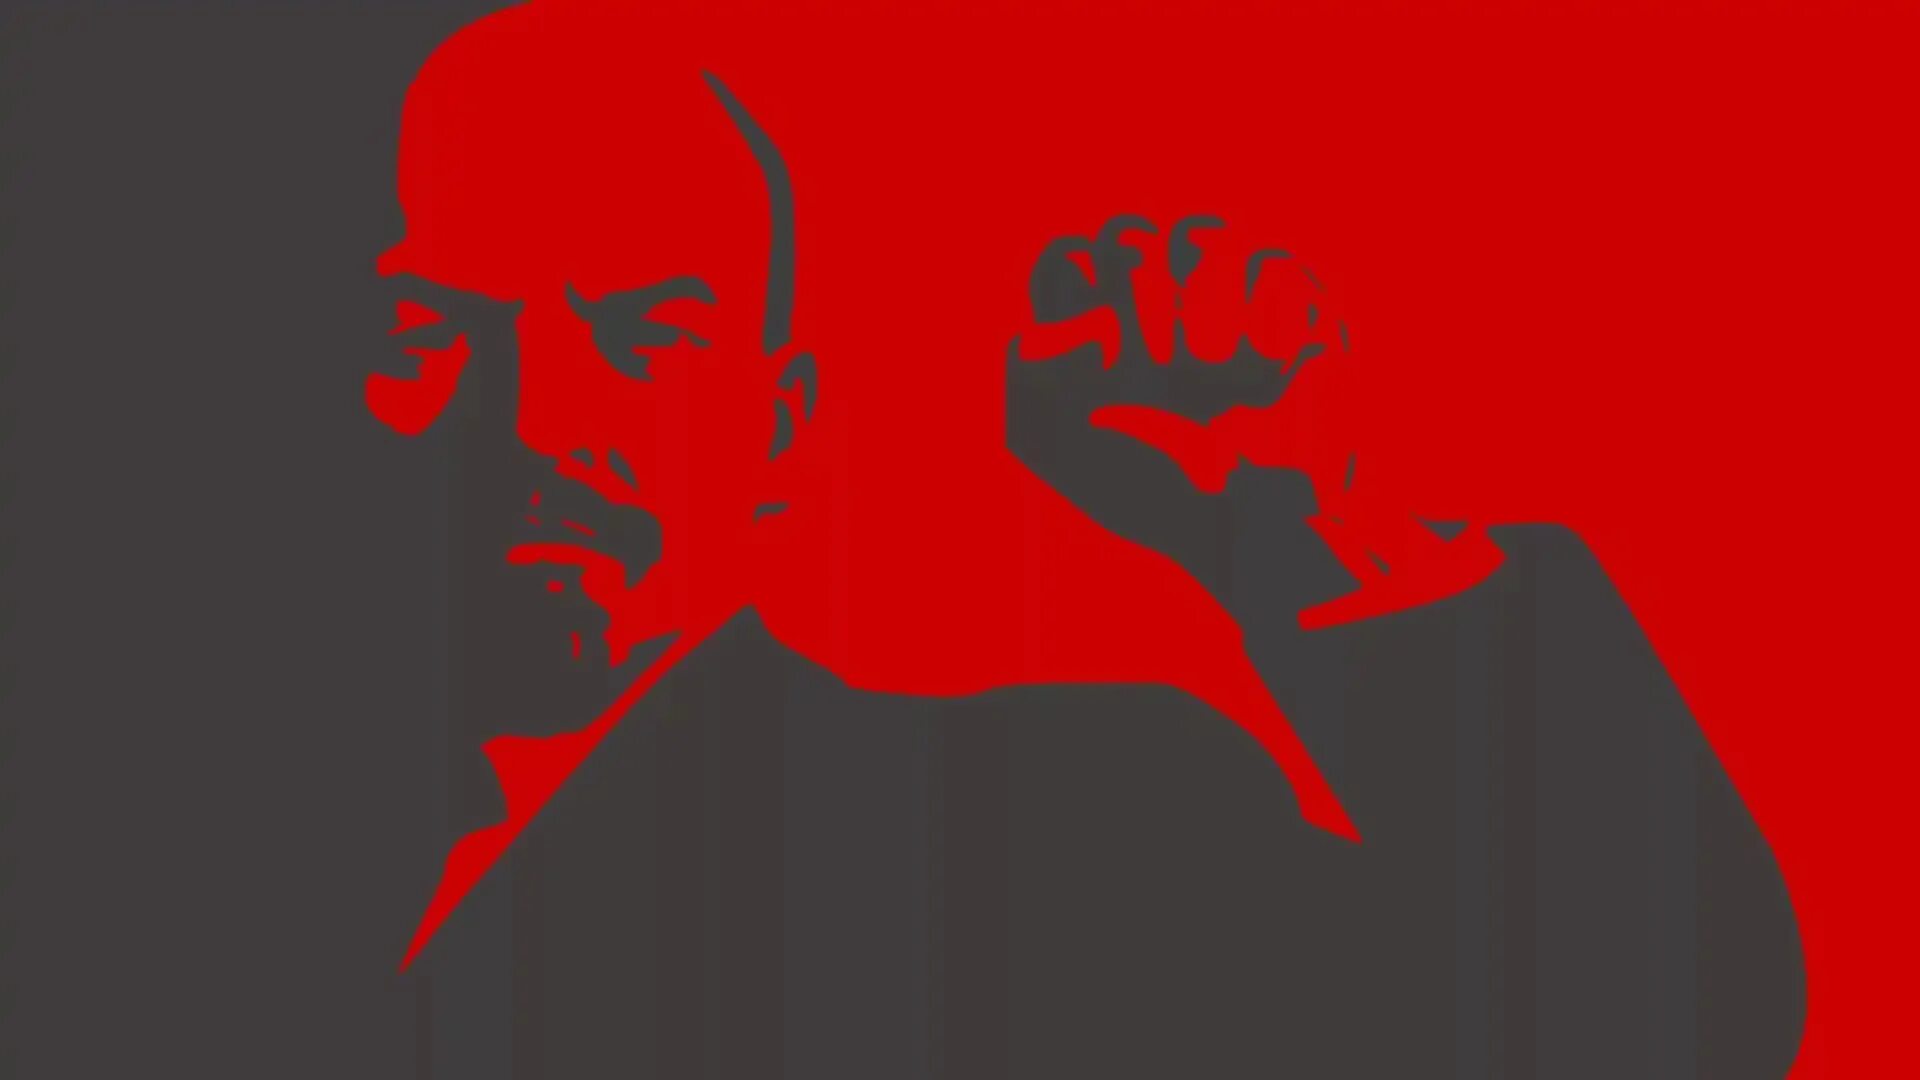 Сталин в октябрьской революции. Маркс Энгельс Ленин Сталин арт. СССР красный флаг Ленин коммунизм.